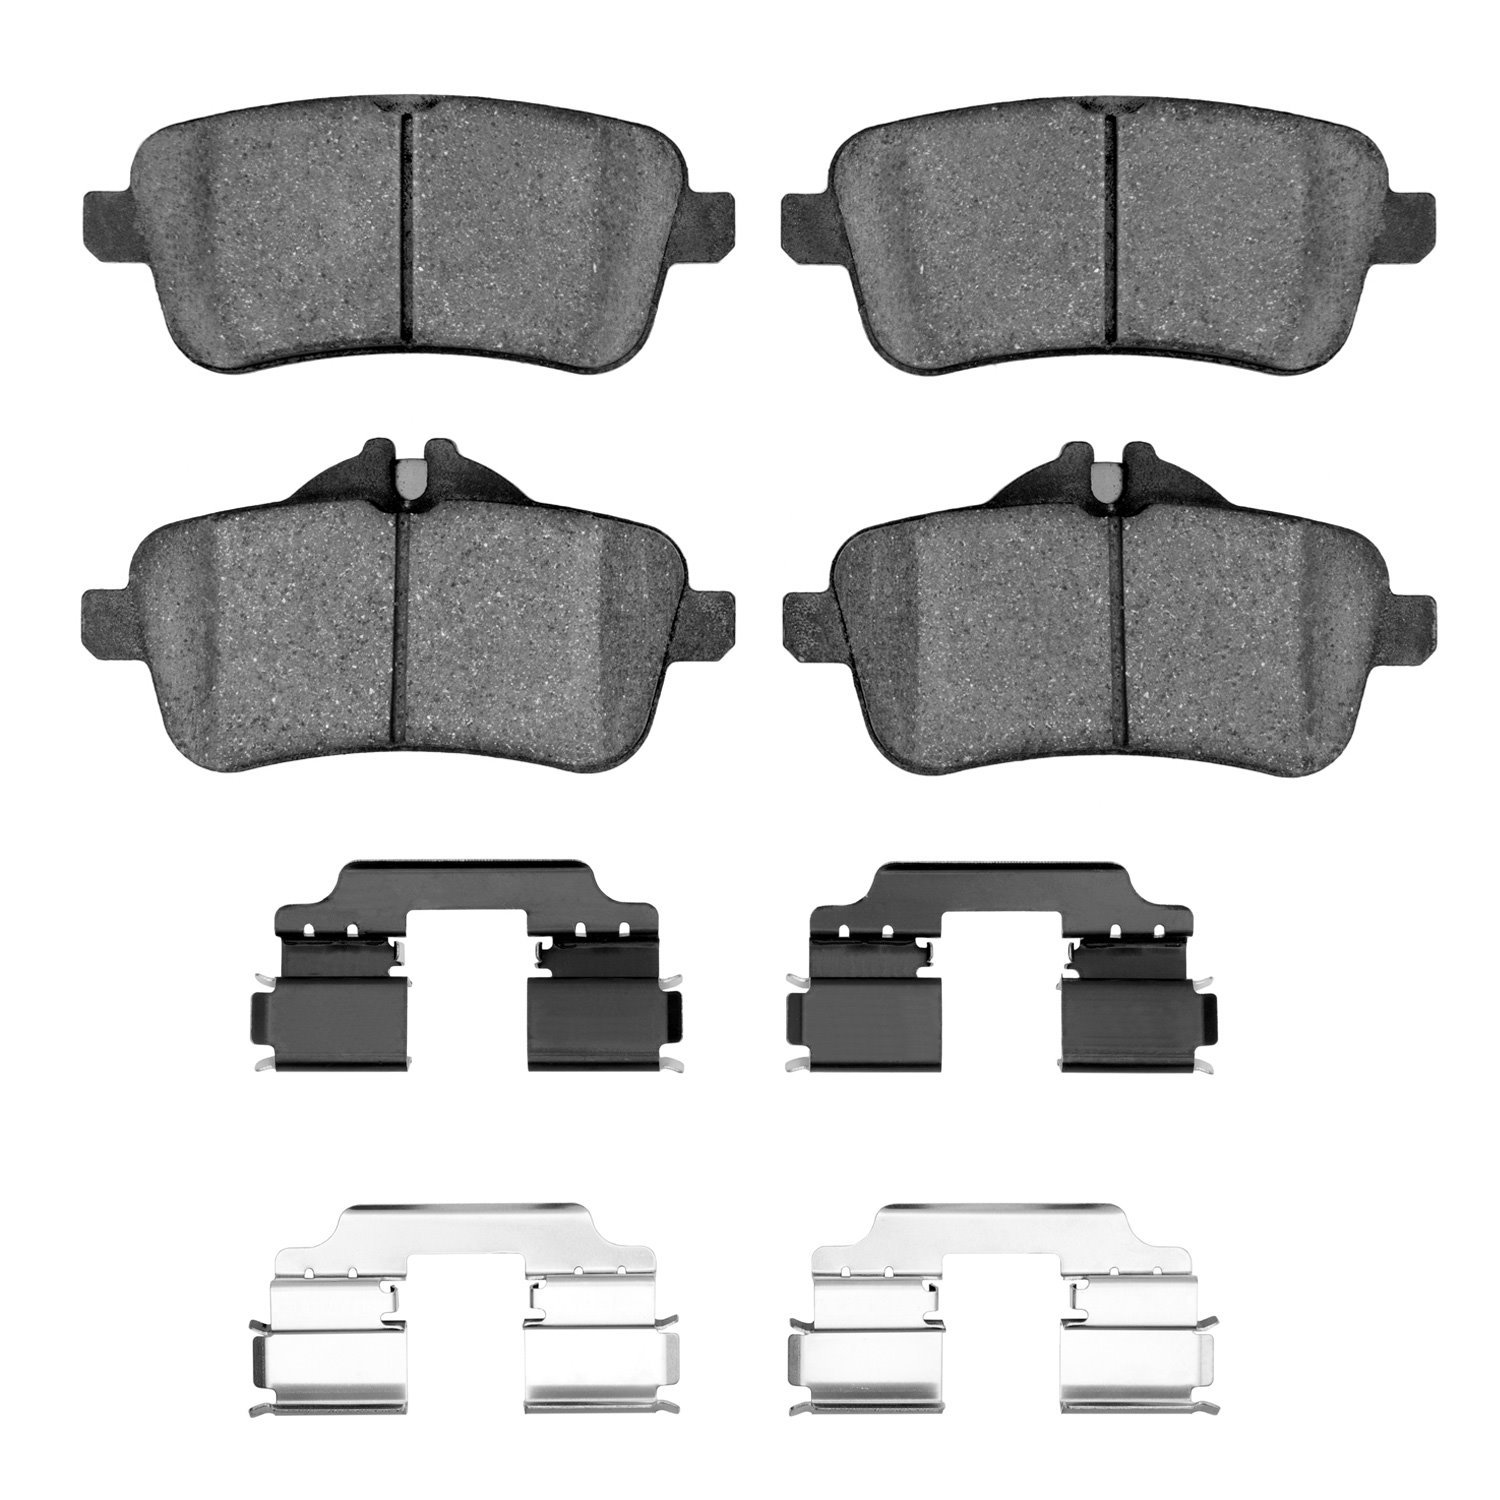 1310-1630-02 3000-Series Ceramic Brake Pads & Hardware Kit, 2012-2018 Mercedes-Benz, Position: Rear